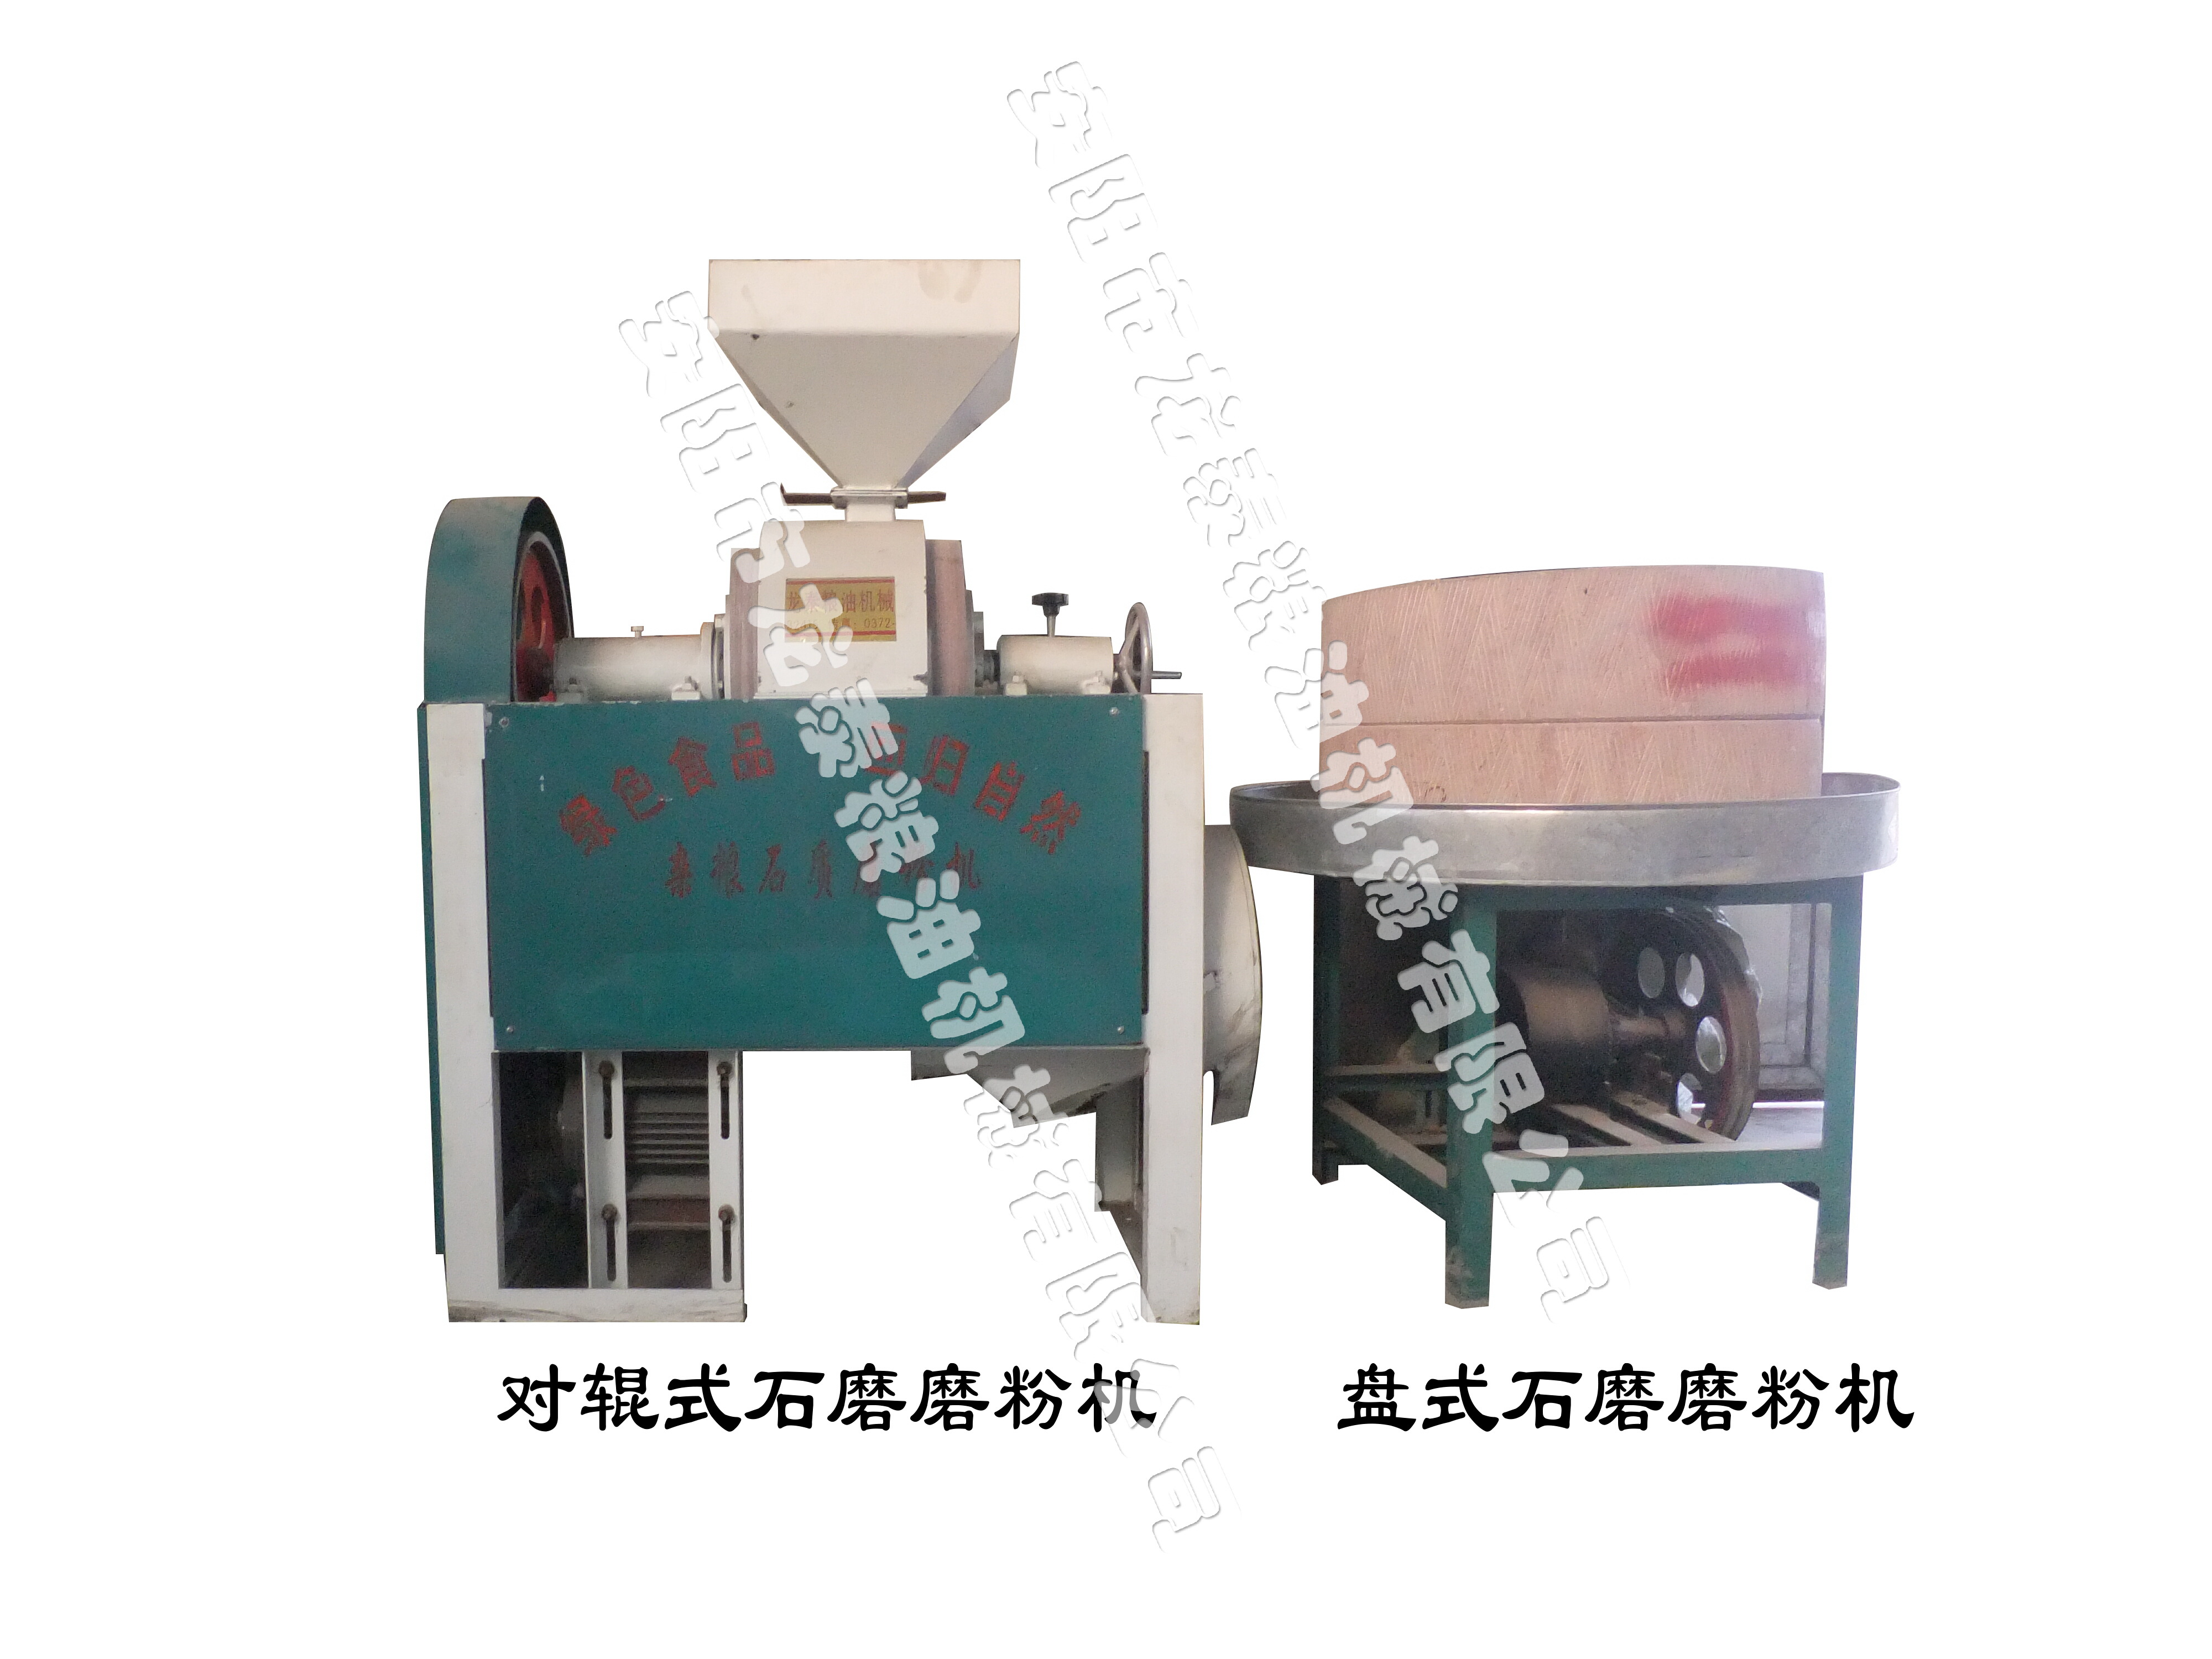 石磨磨粉機-石磨簡介、產品規格 